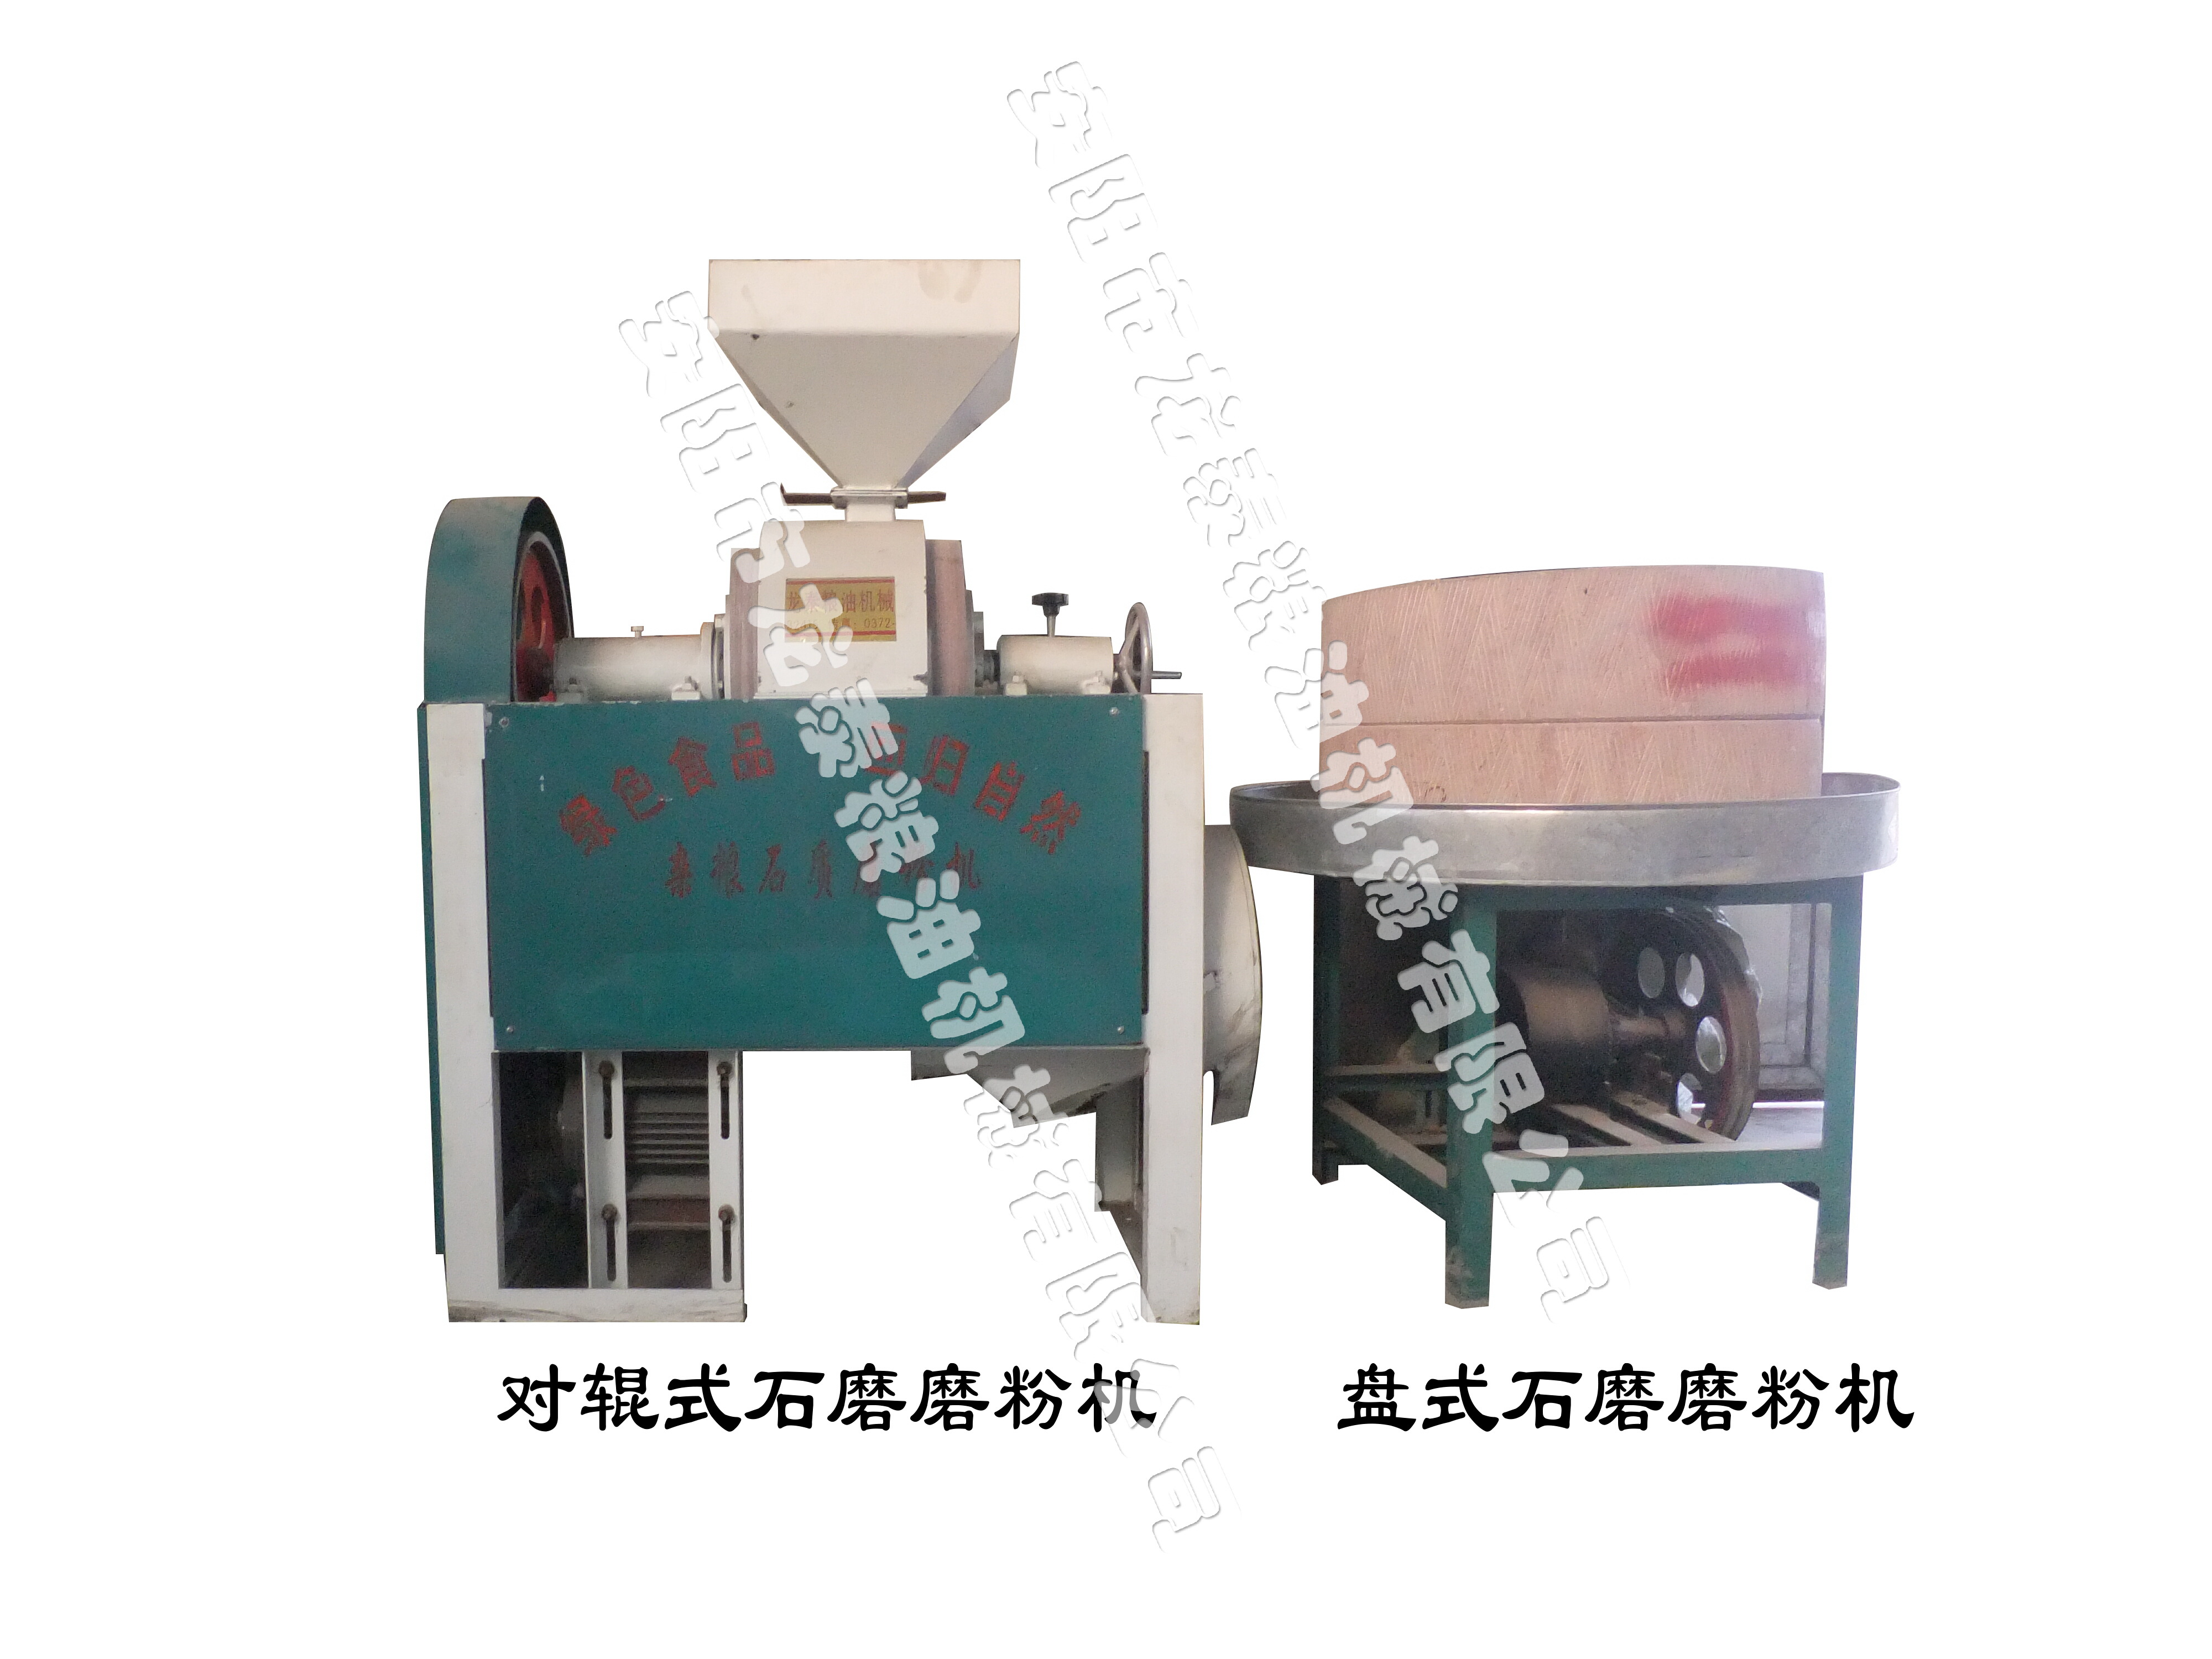 石磨磨粉機-石磨簡介、產品規格 